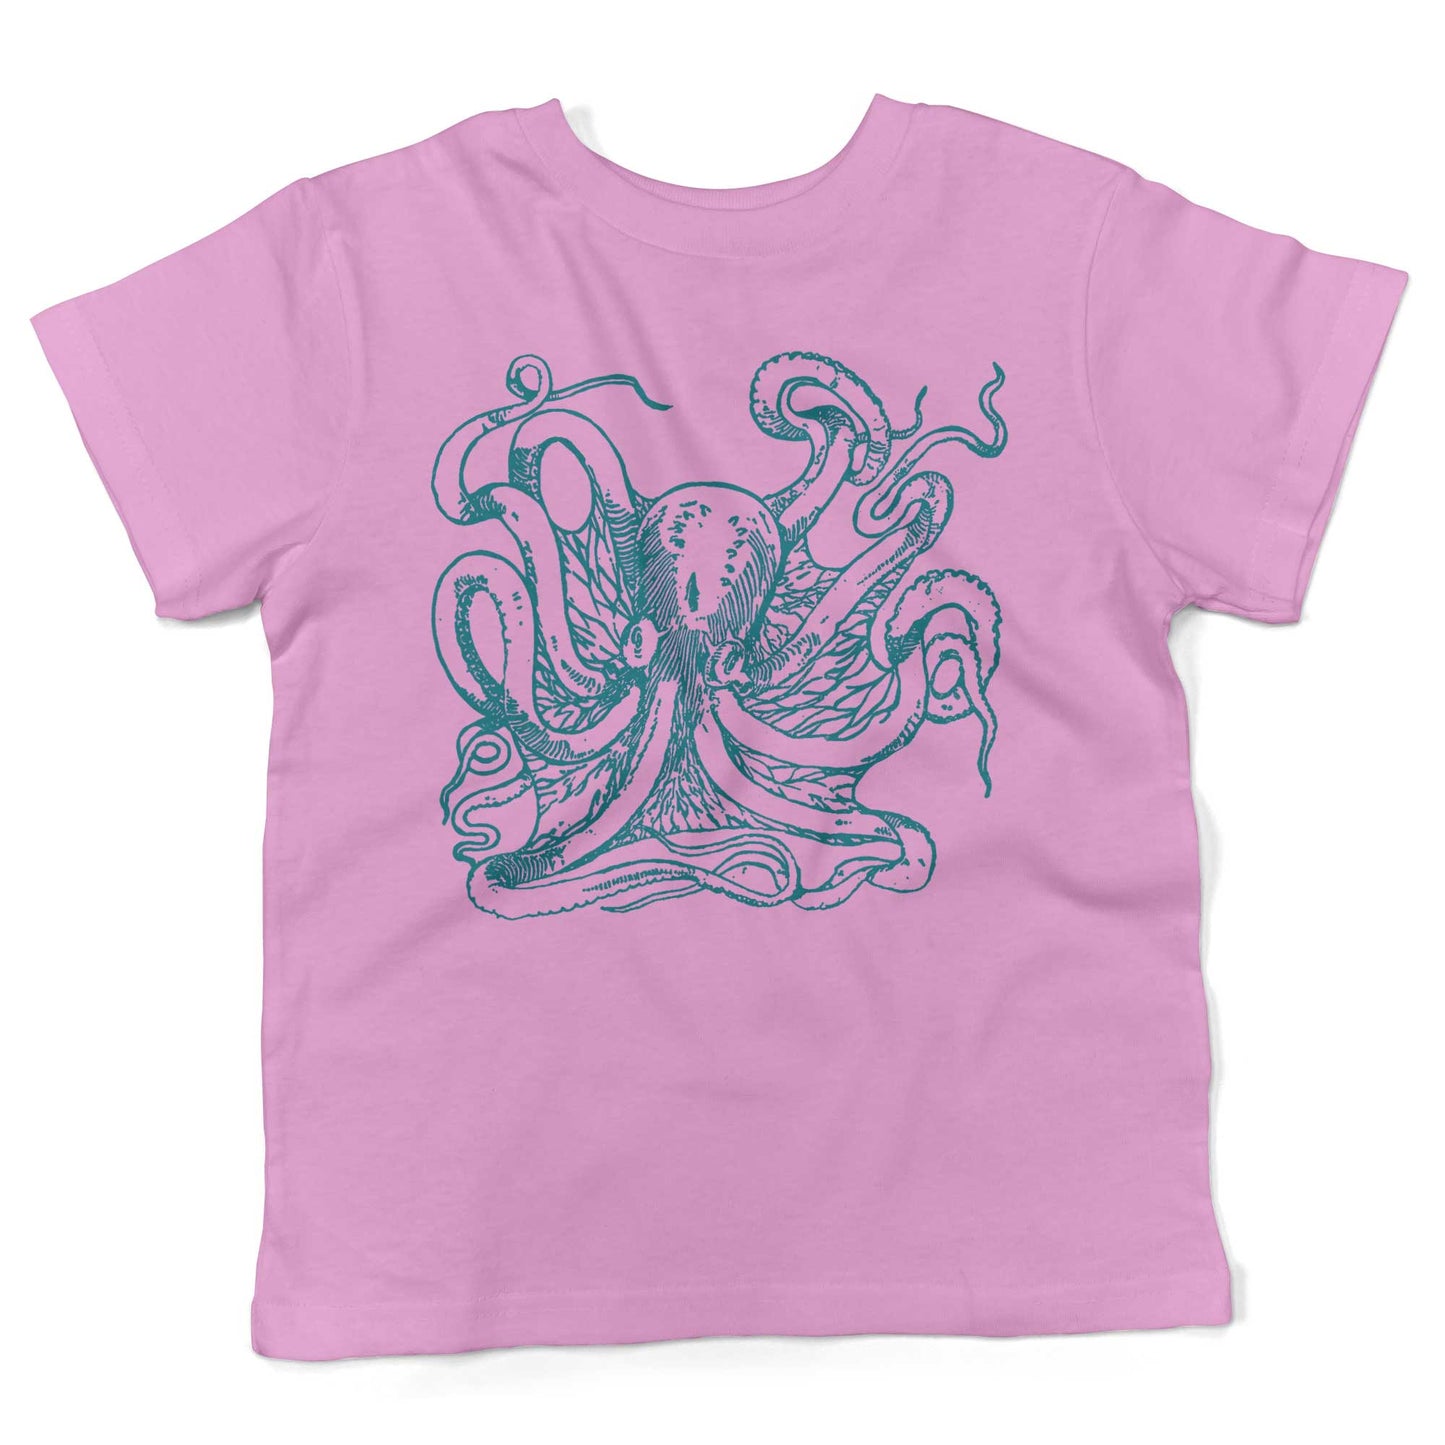 Giant Octopus Toddler Shirt-Organic Pink-2T